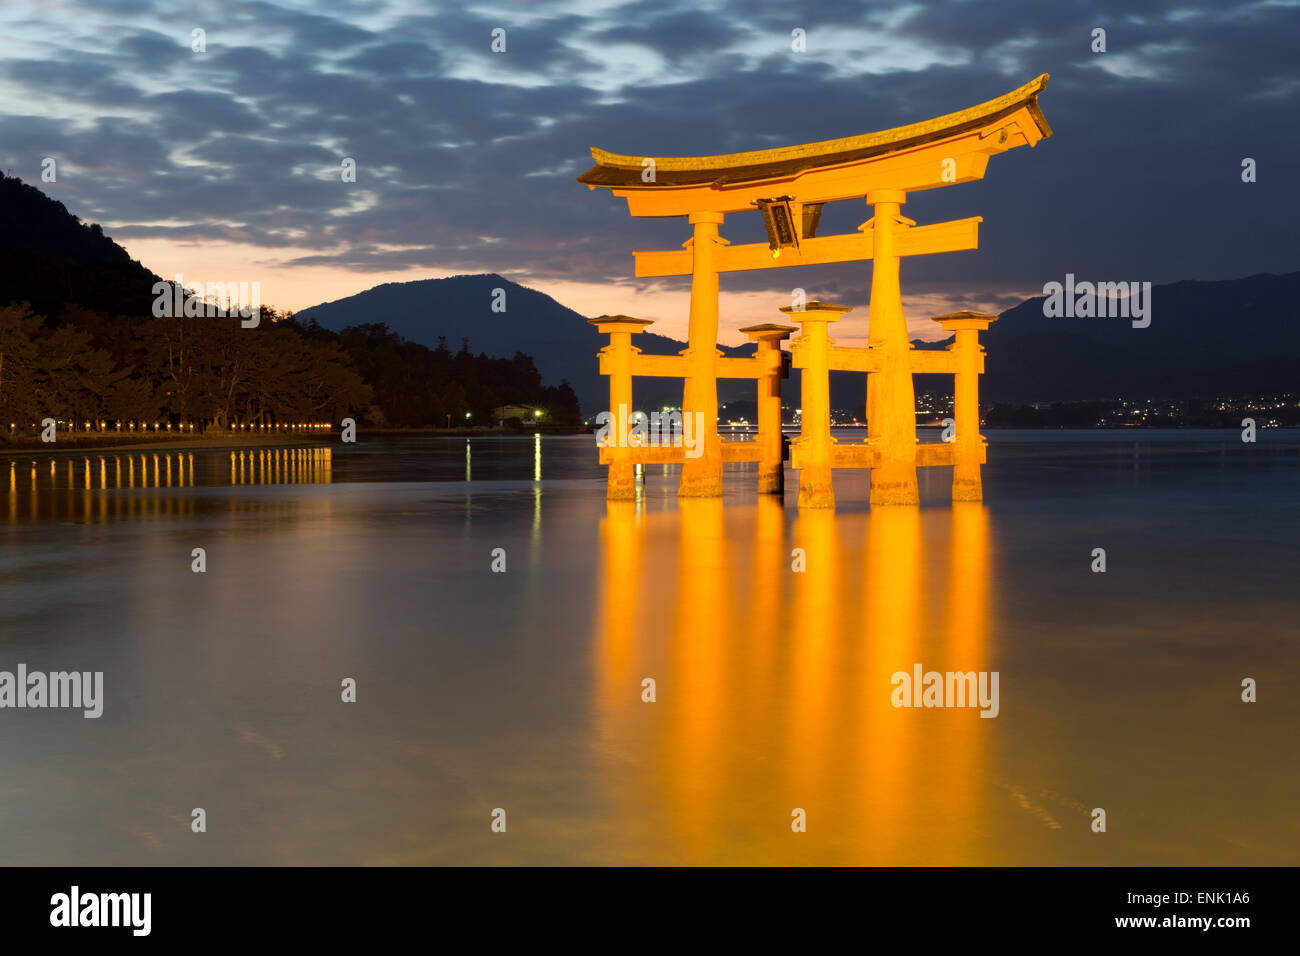 Le Miyajima de torii flottant d'Itsukushima au crépuscule, l'UNESCO, l'île de Miyajima, dans l'ouest de Honshu, Japon, Asie Banque D'Images